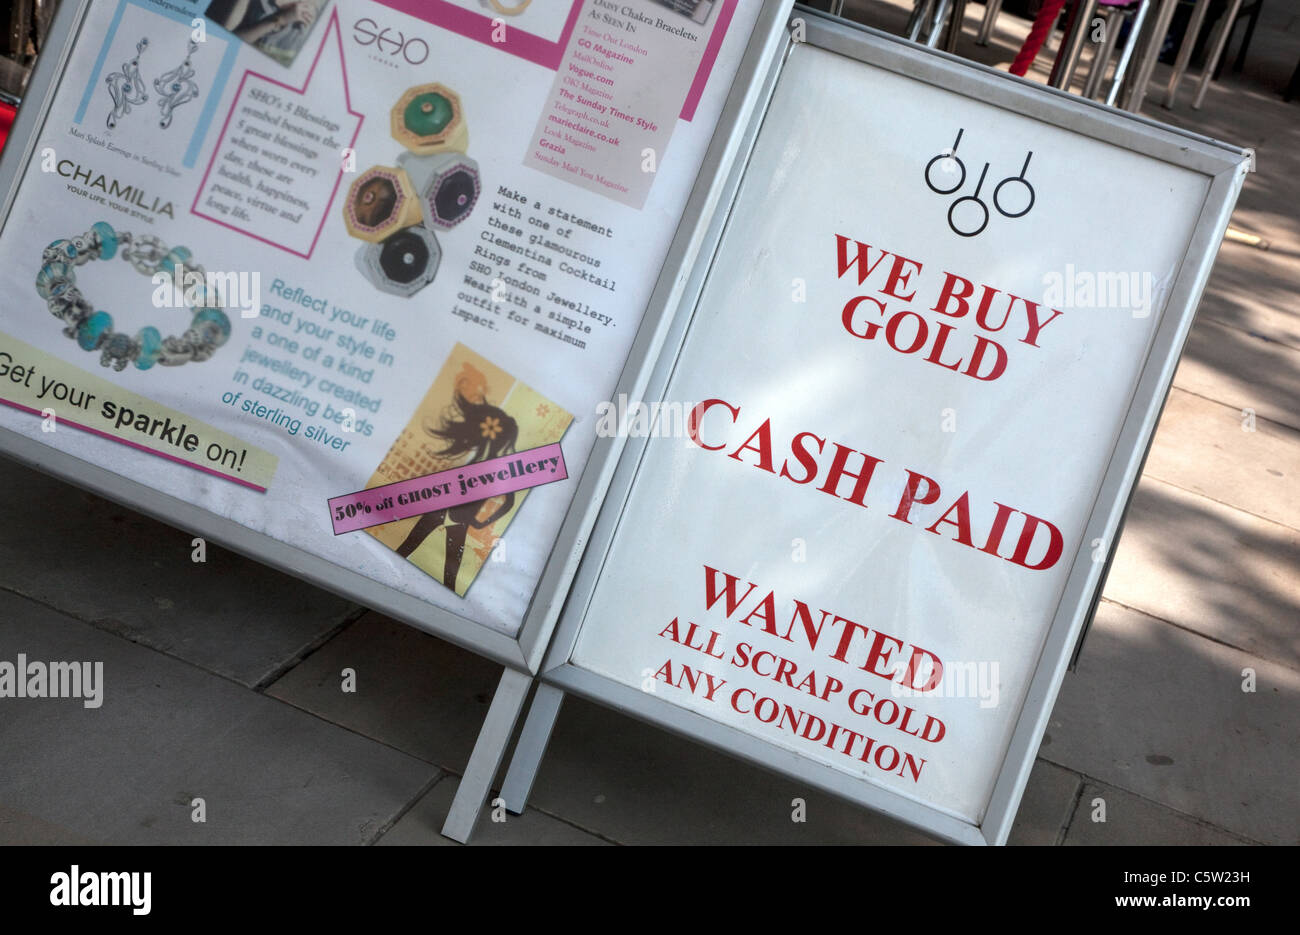 Gold Wanted Schild draußen London Pfandleiher-shop Stockfoto